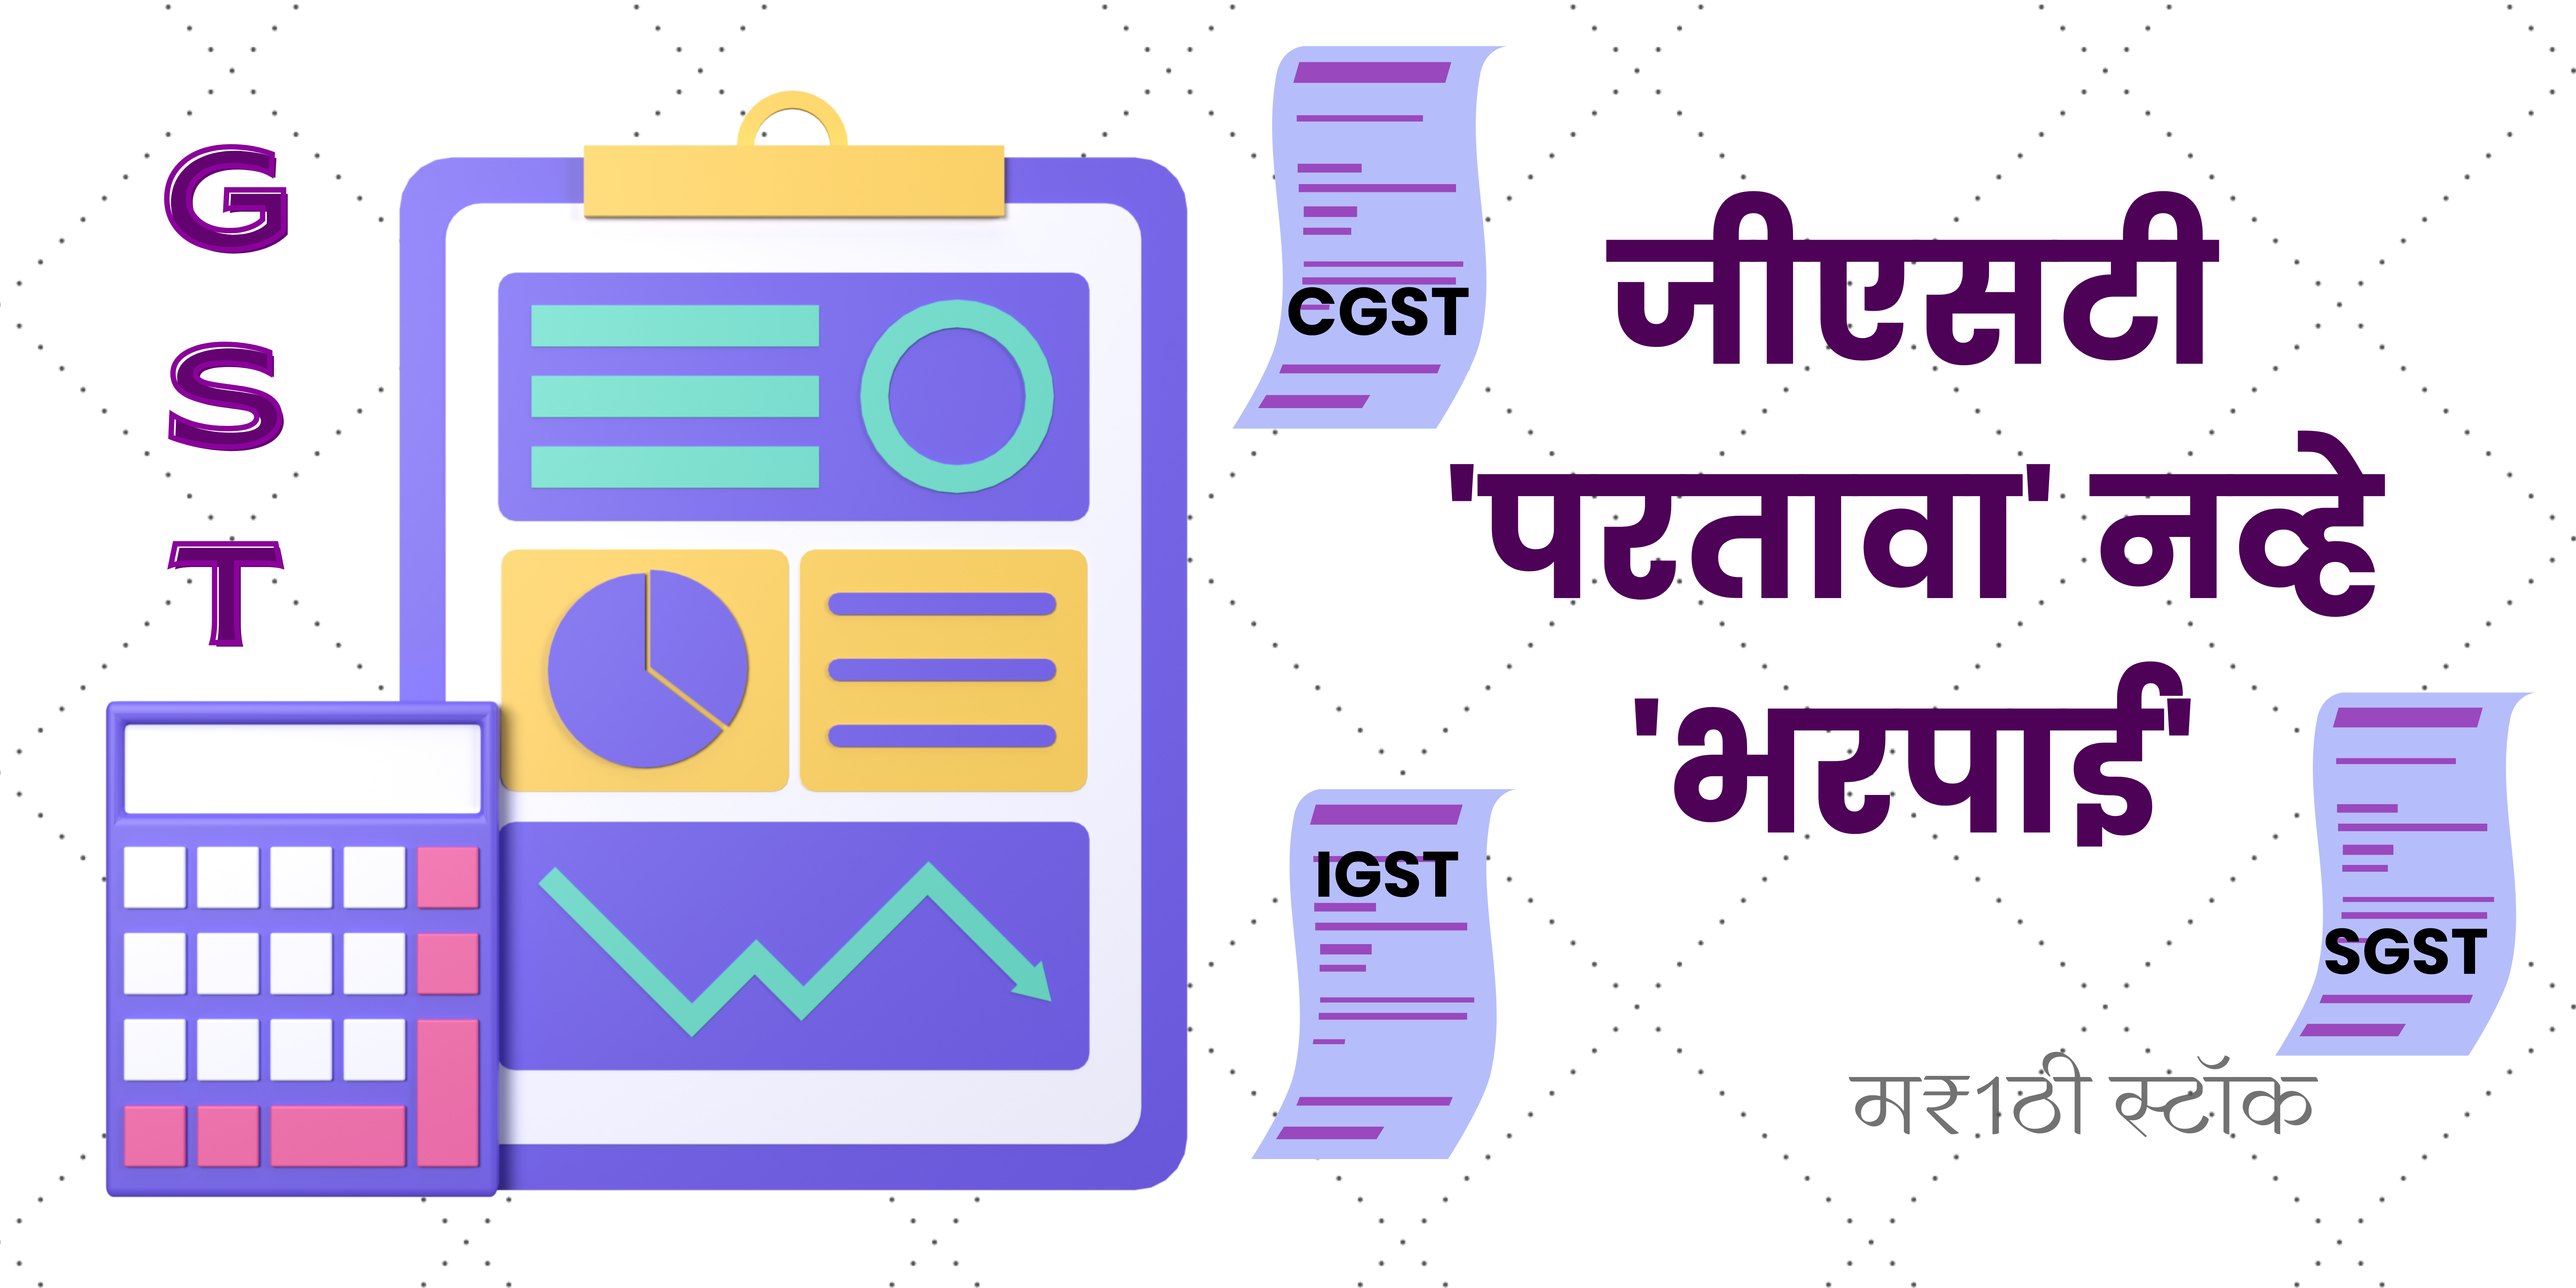 GST information in marathi